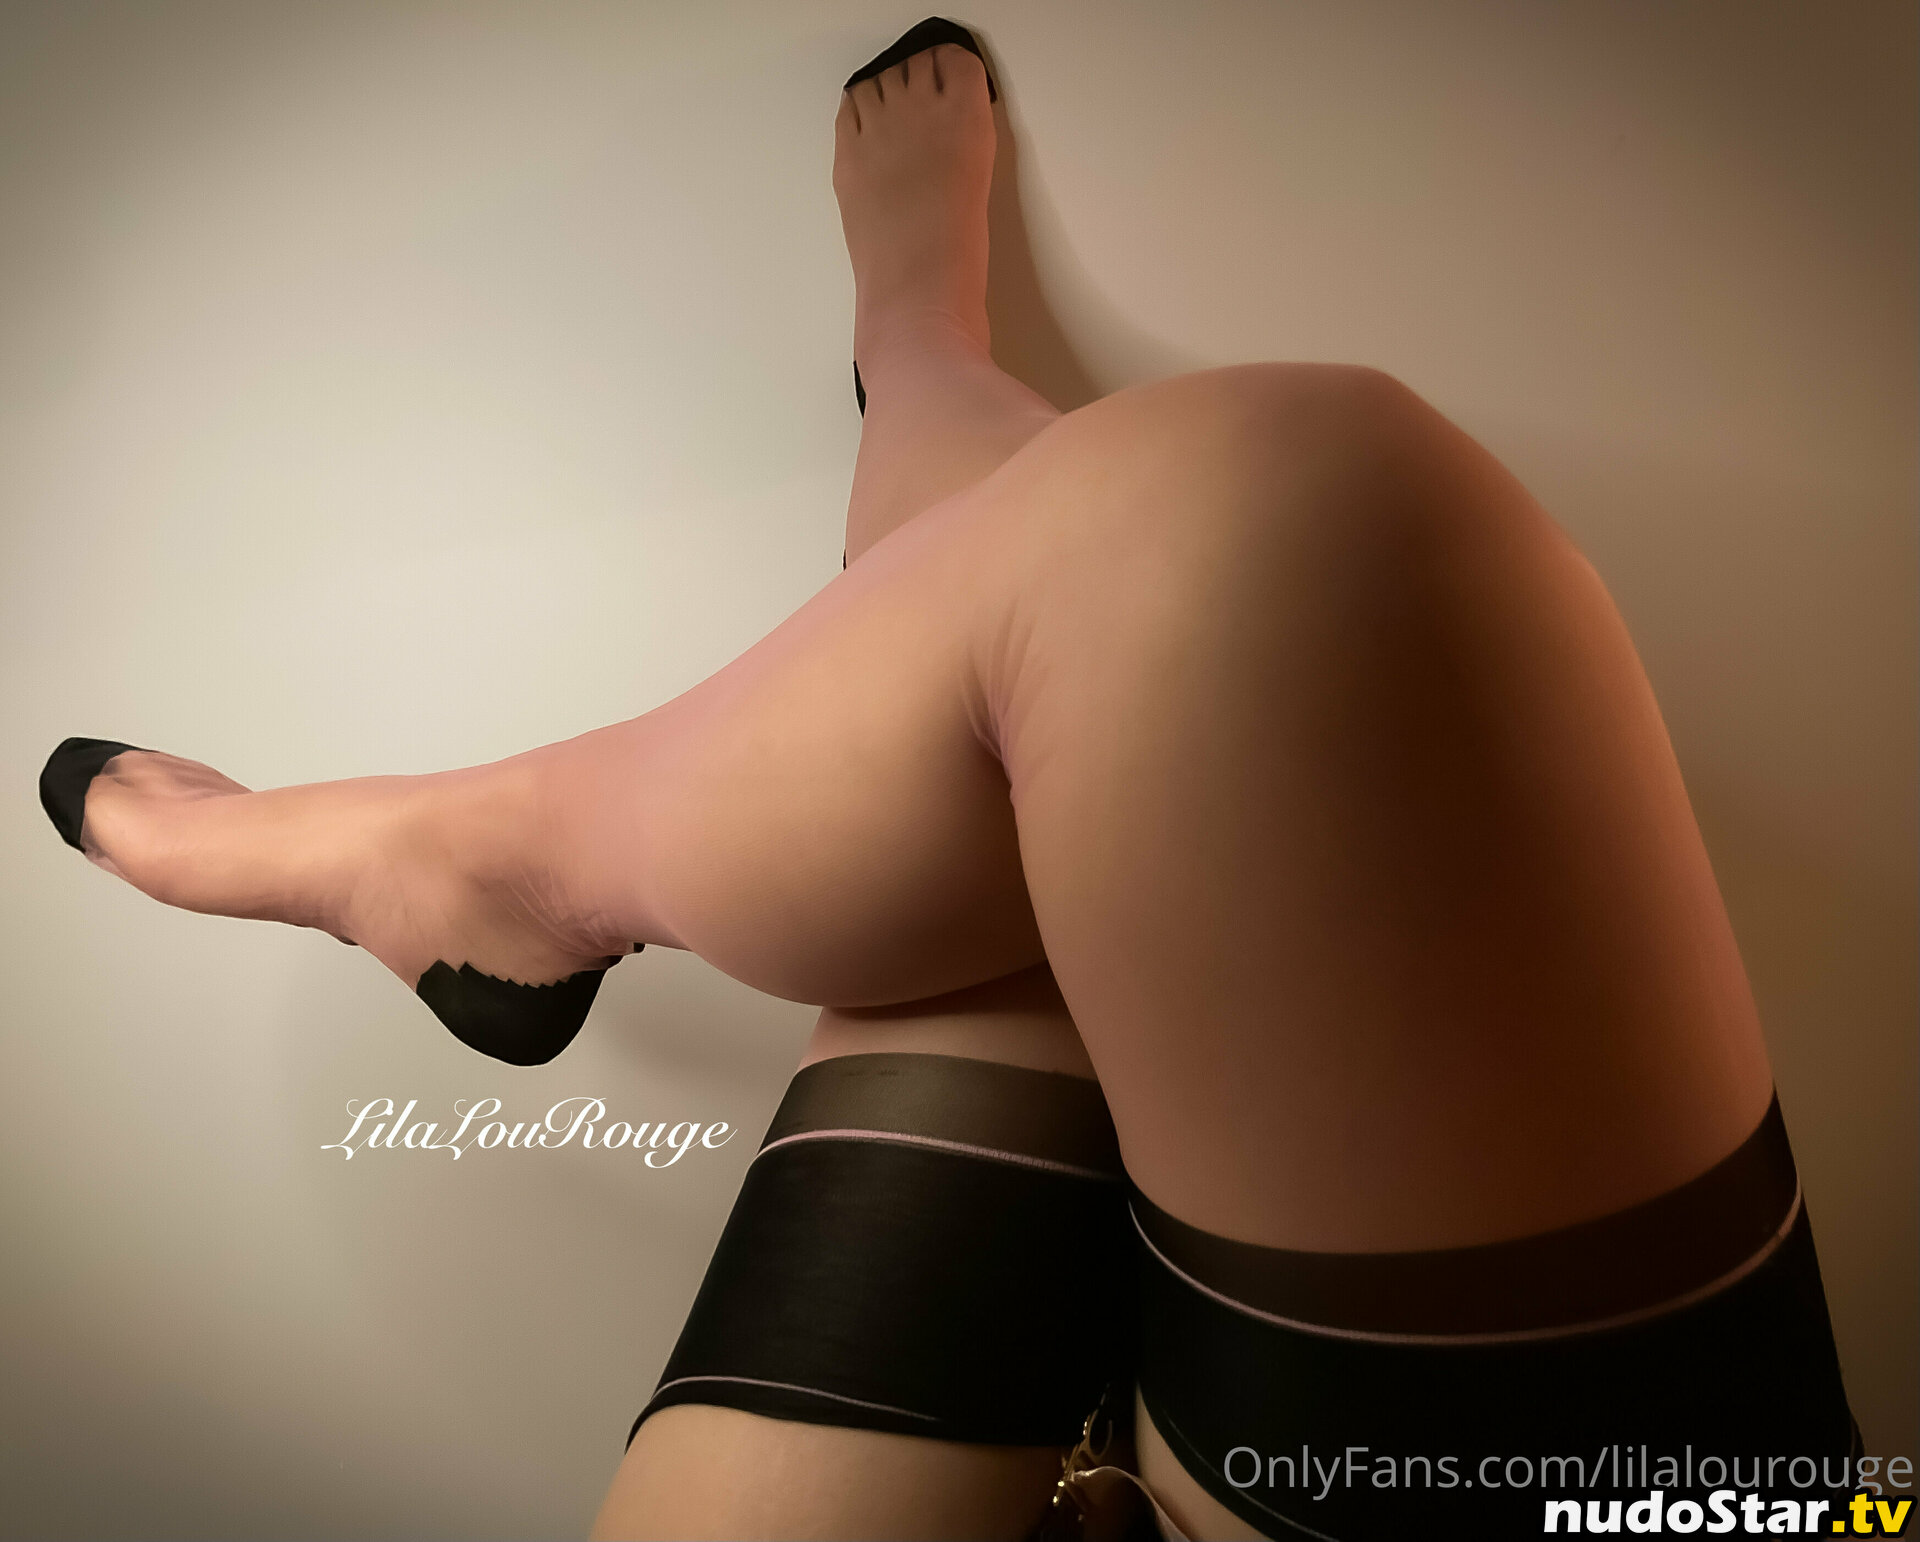 fantasyfetishismdotcom / lilalourouge Nude OnlyFans Leaked Photo #5